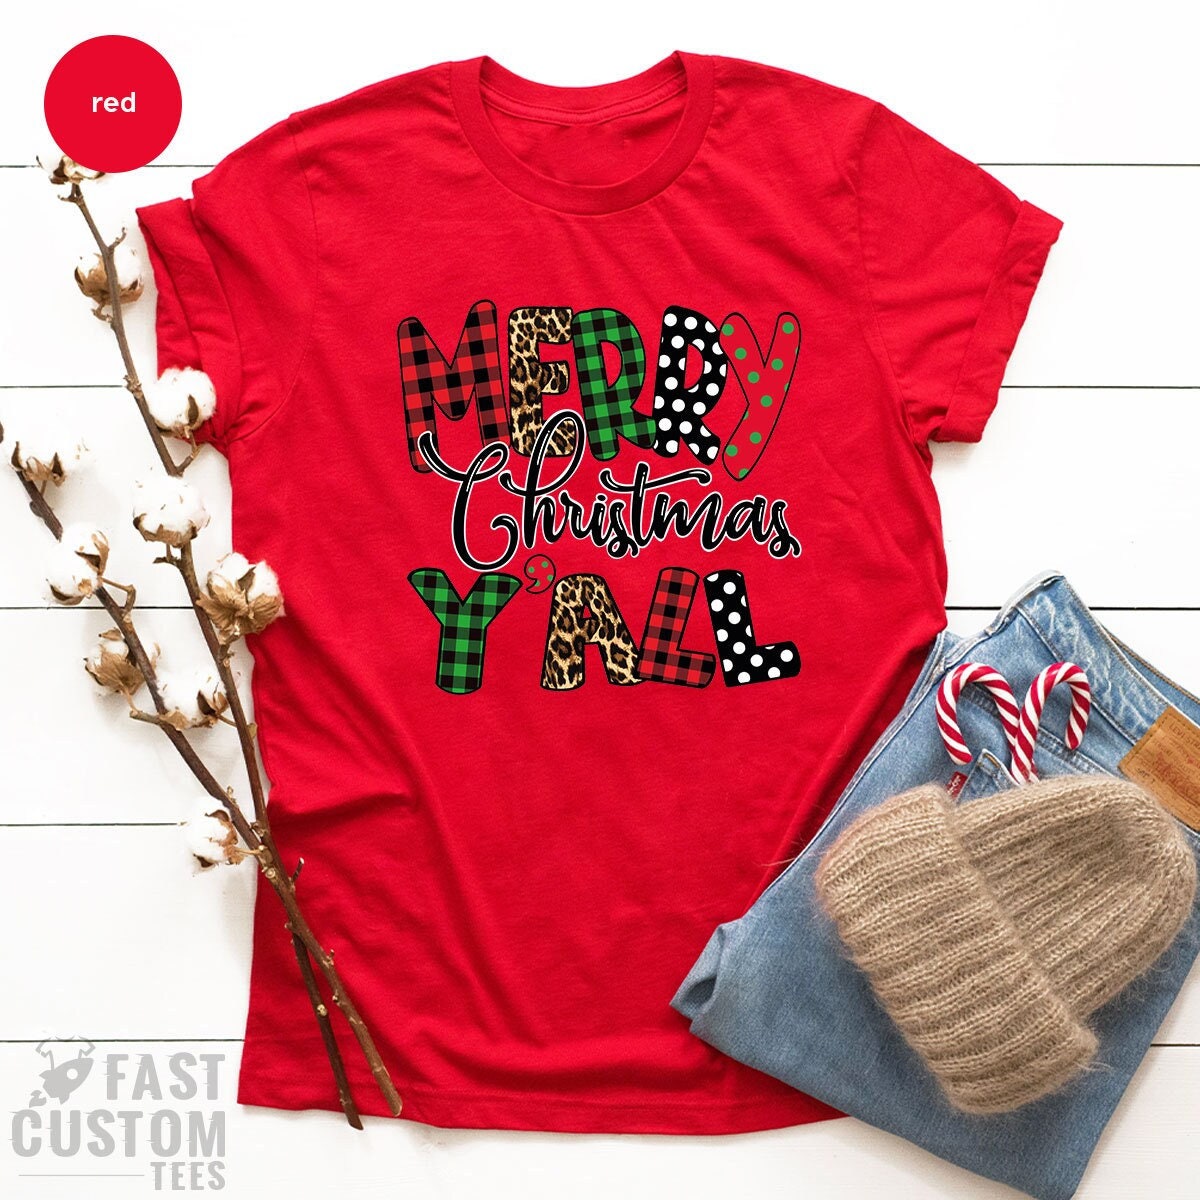 Christmas Tree T-shirt, Christmas Y'all T-Shirt, Women Christmas Gift, Merry Shirt, Cute Christmas Tee, Family Christmas Shirt, Merry Tee - Fastdeliverytees.com